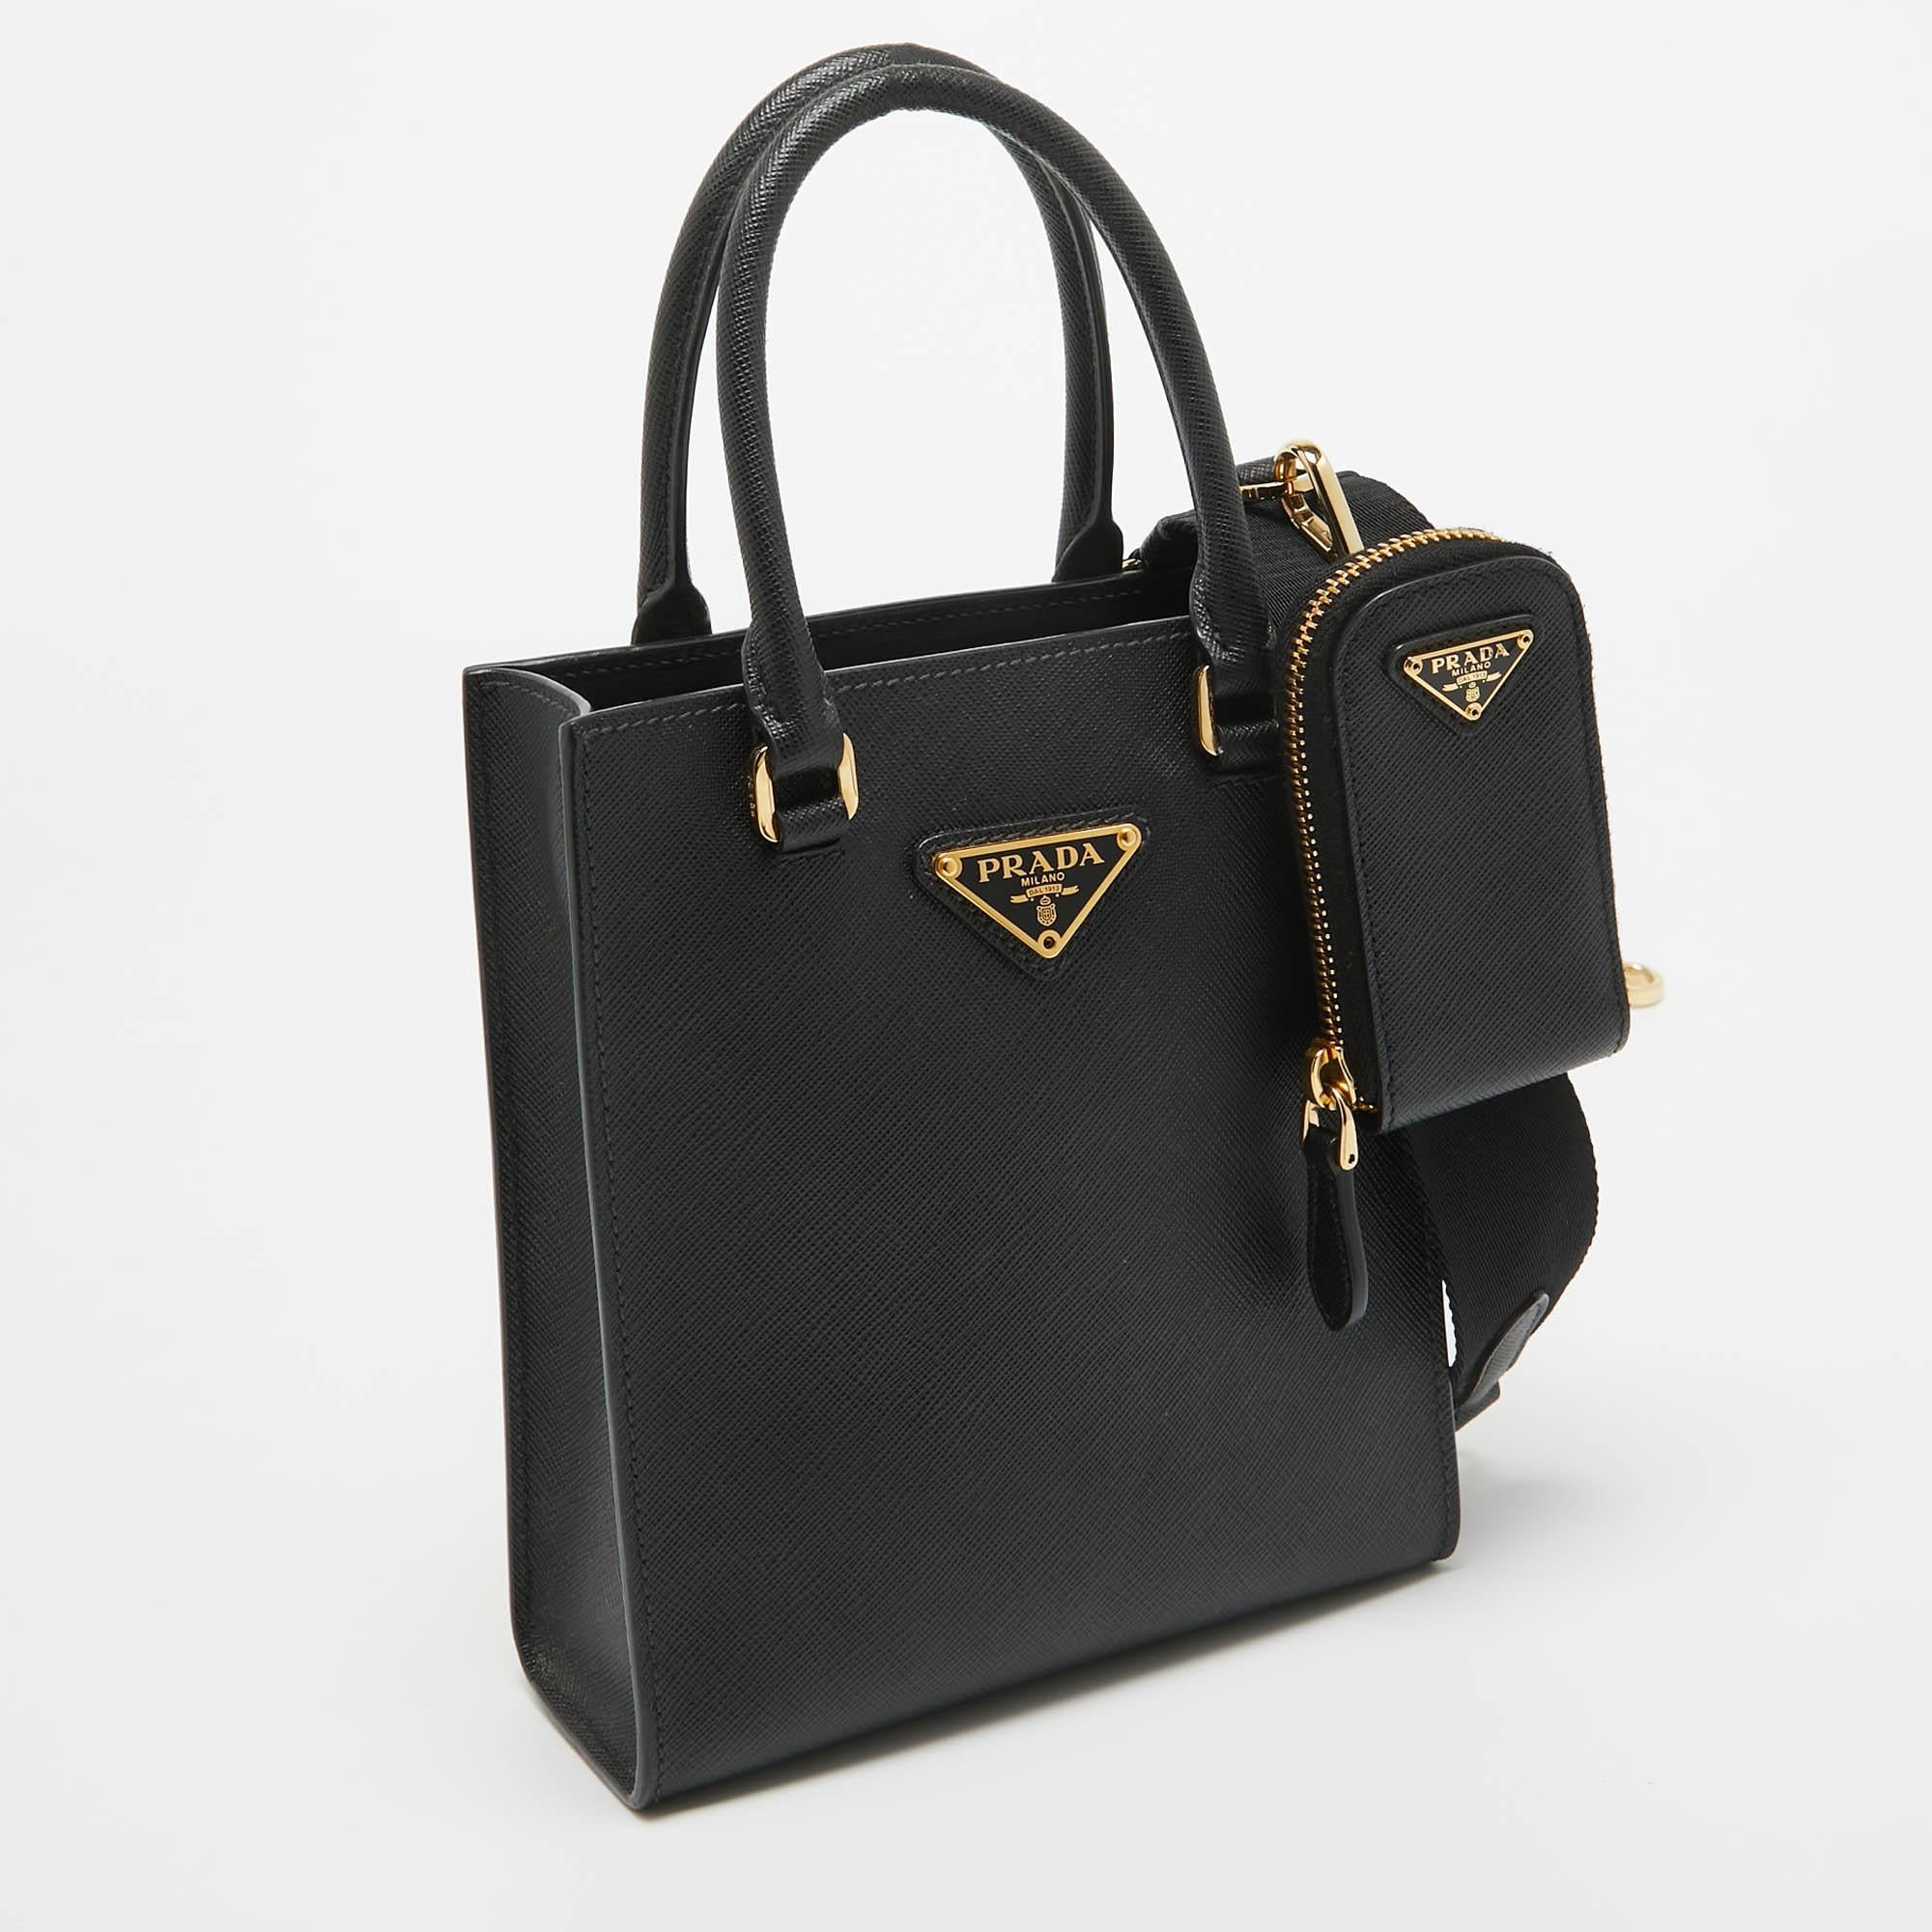 Prada Black Saffiano Lux Leather Small Tote In Good Condition For Sale In Dubai, Al Qouz 2